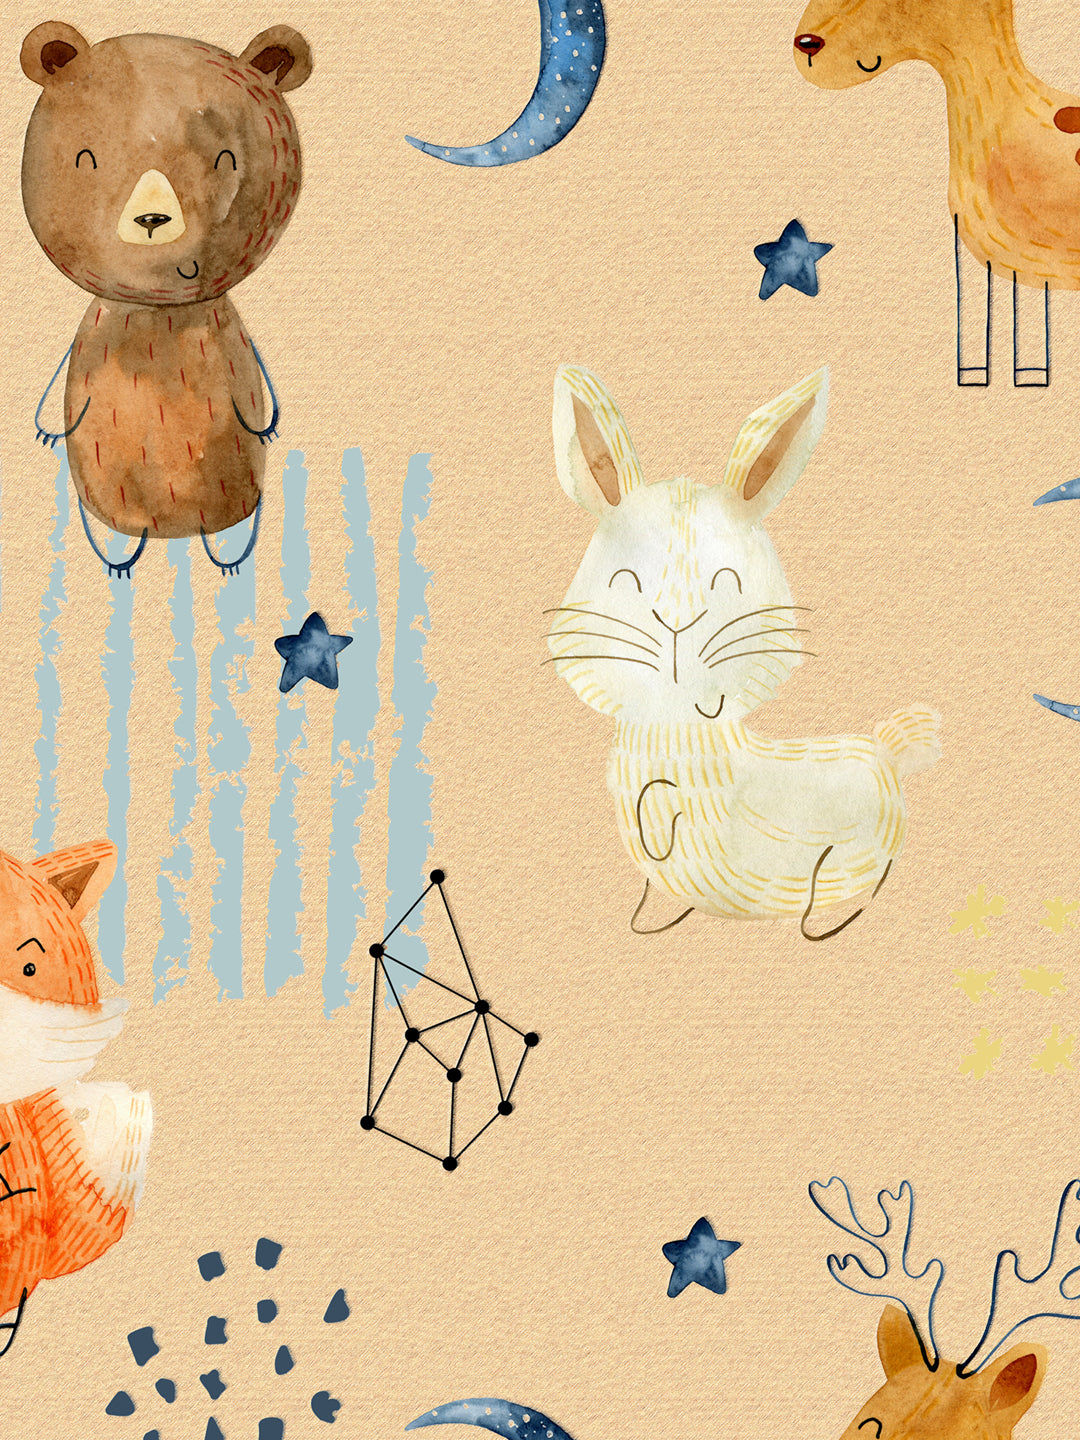 Yellow Animal Character Doodle Print Kids Single Bedsheet